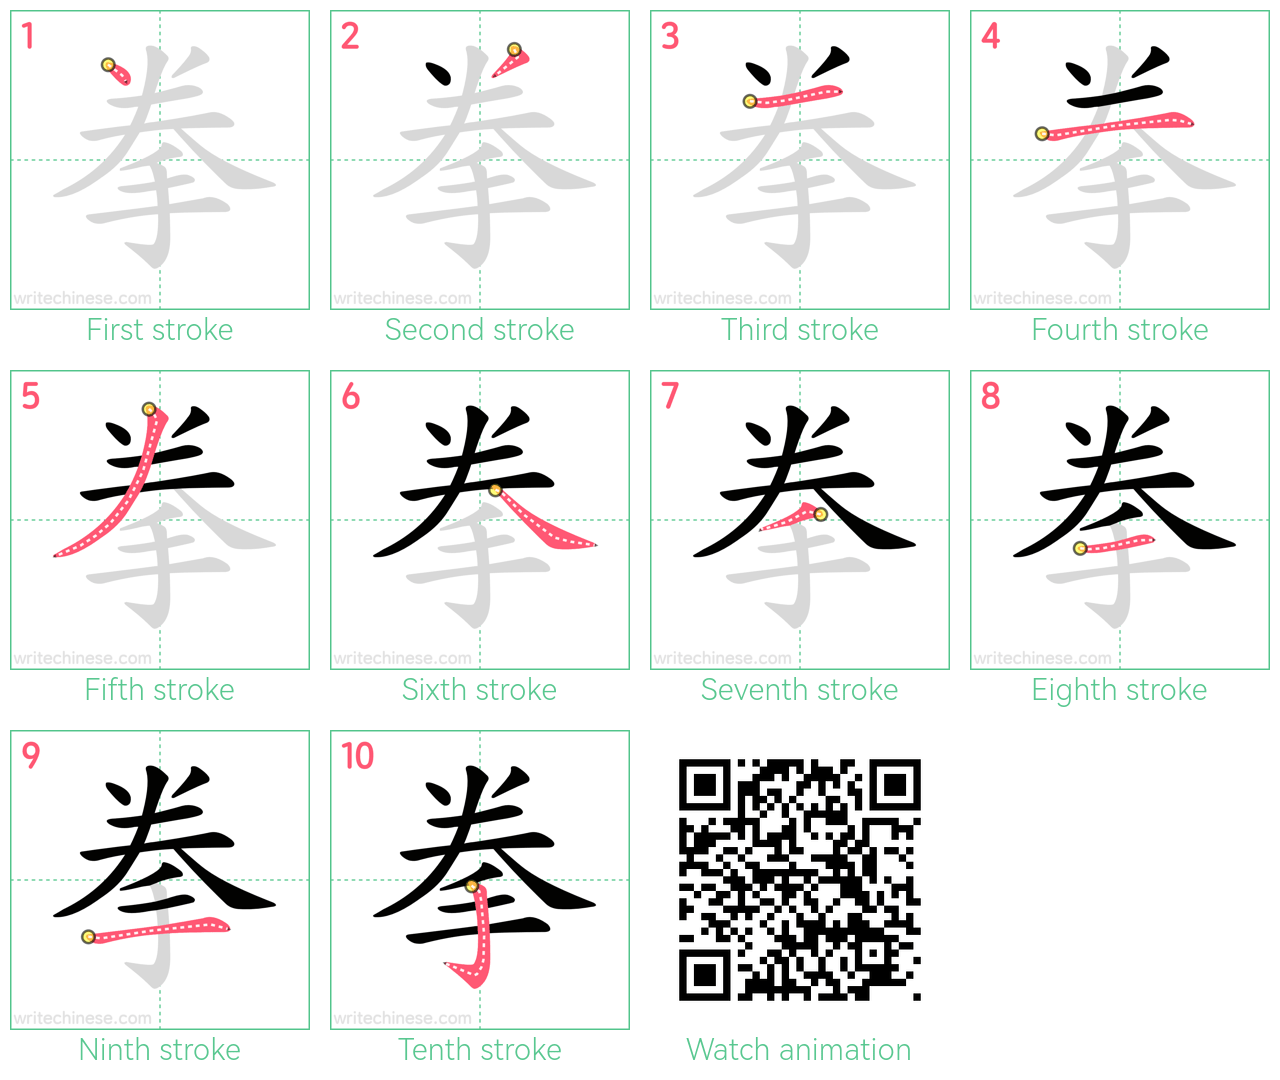 拳 step-by-step stroke order diagrams